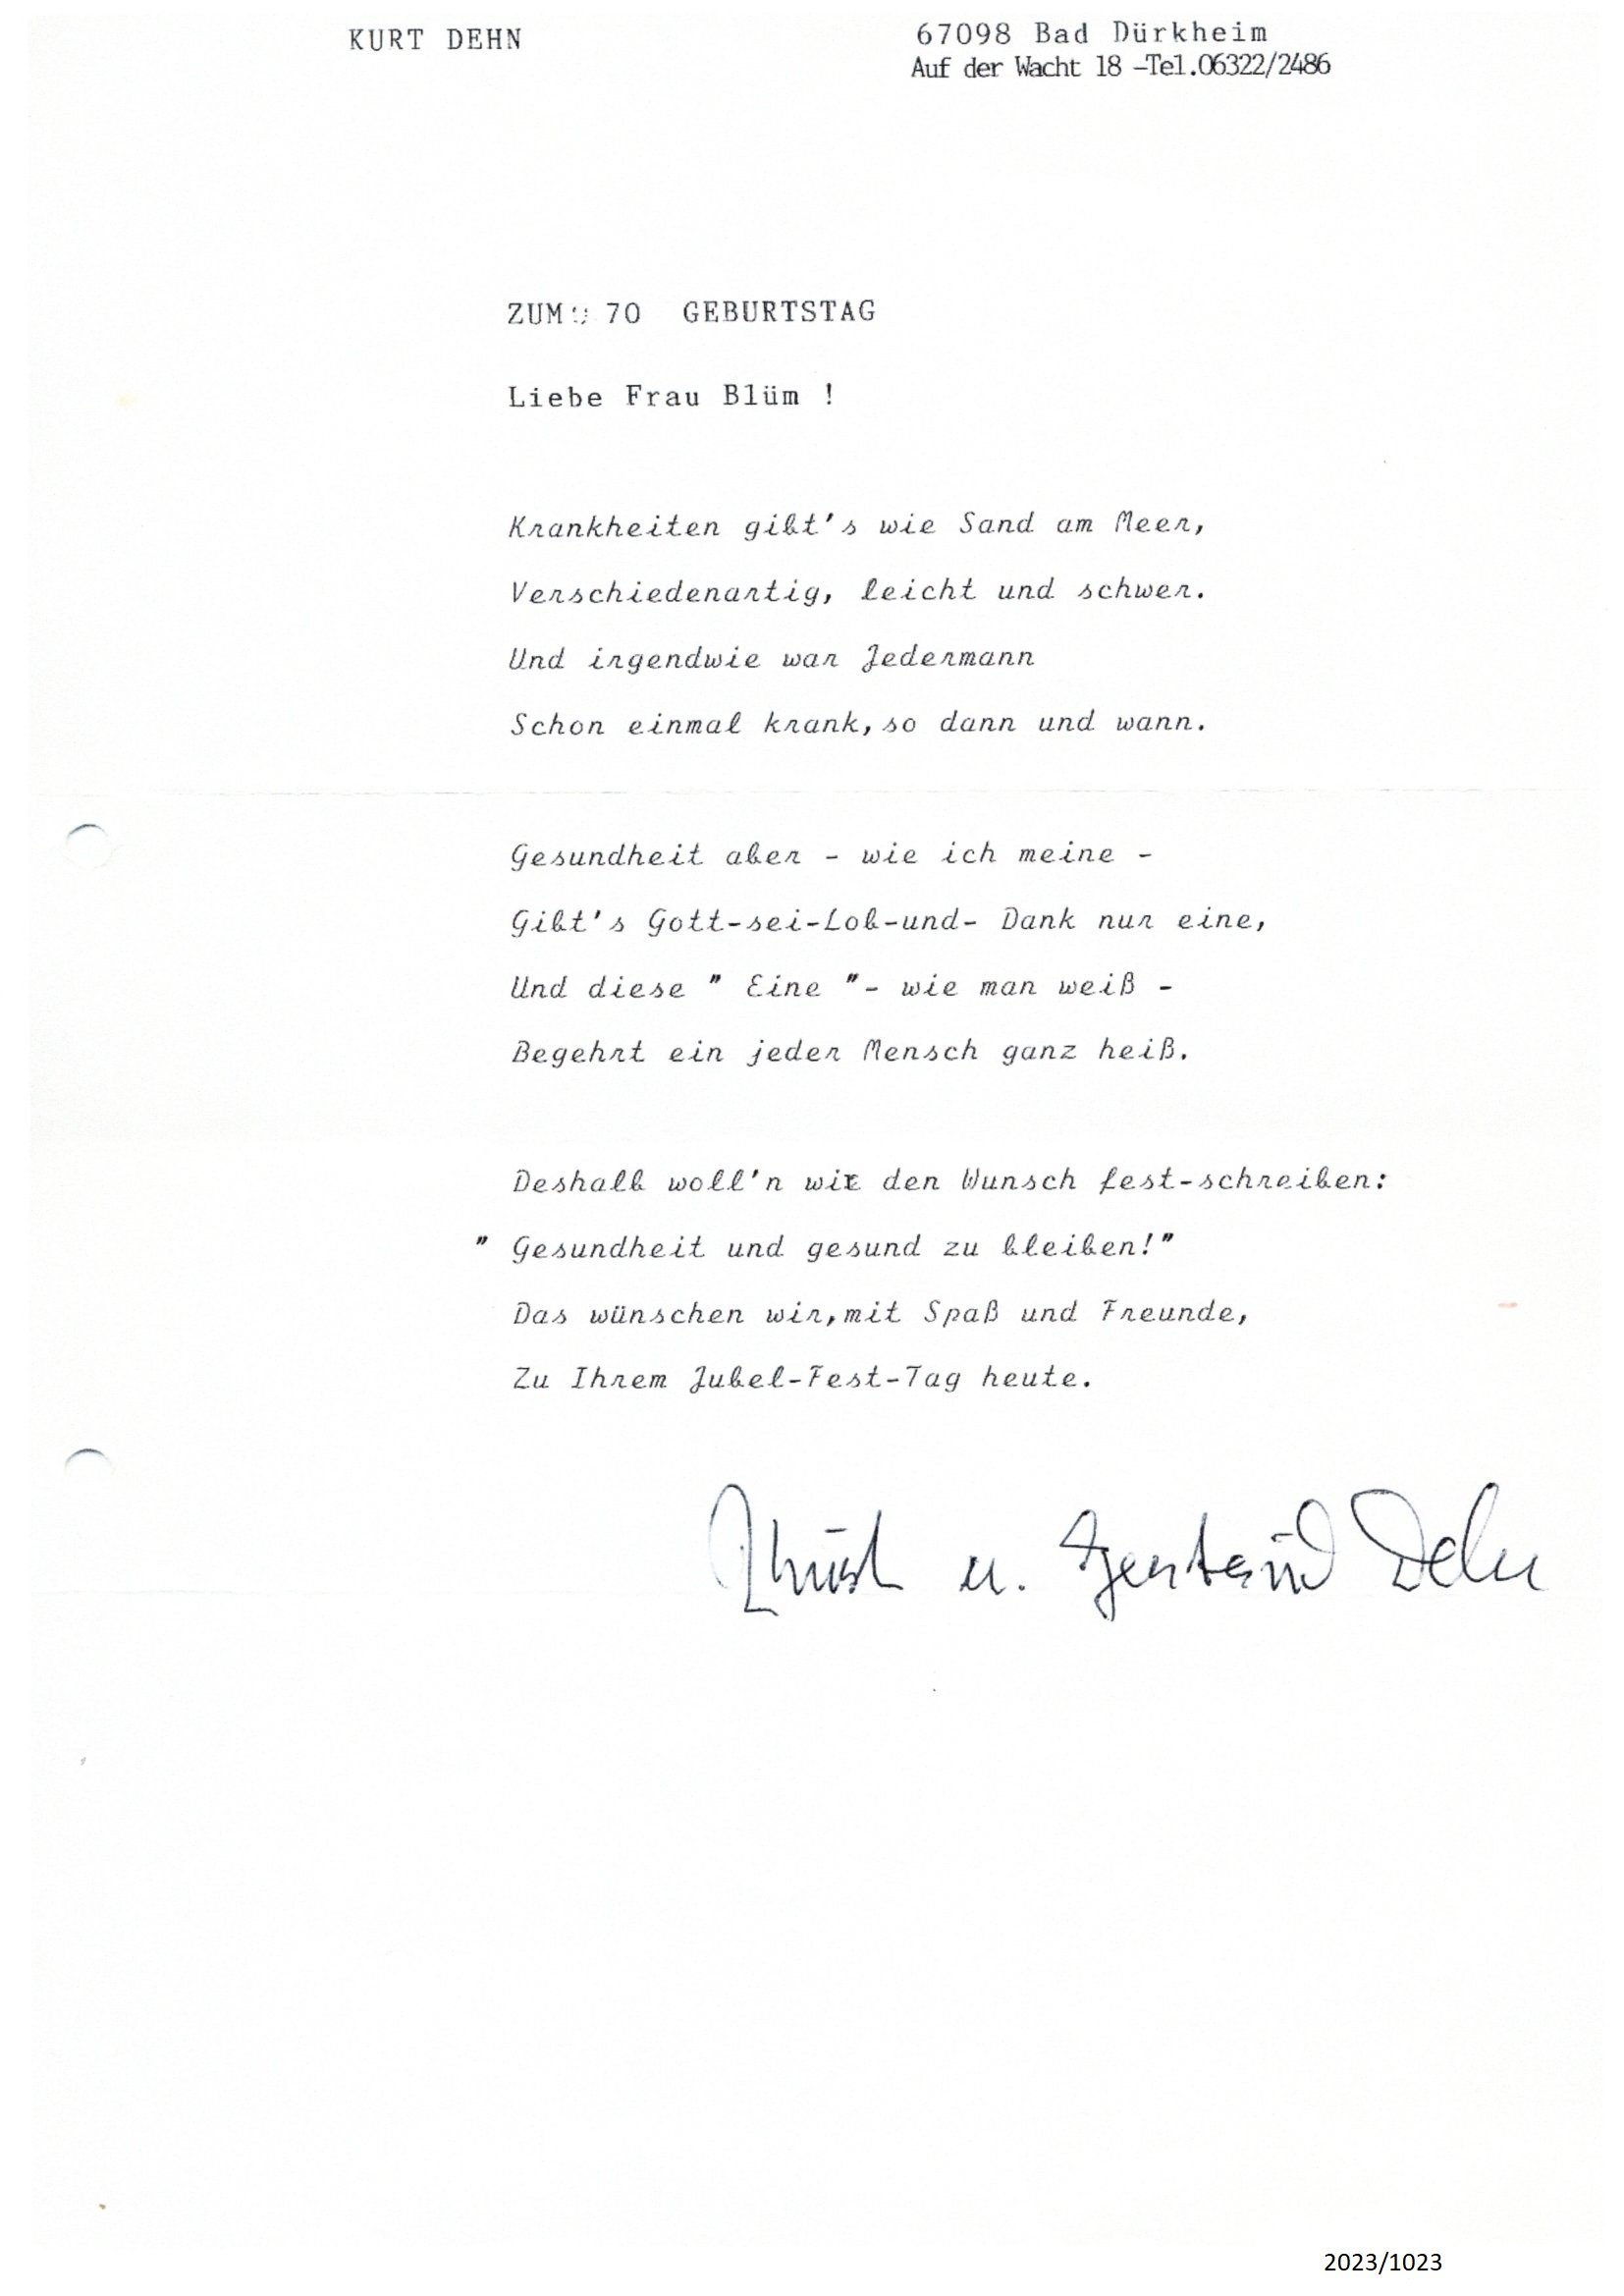 Gedicht von Kurt Dehn für Frau Blüm zu ihrem 70. Geburtstag (Stadtmuseum Bad Dürkheim im Kulturzentrum Haus Catoir CC BY-NC-SA)